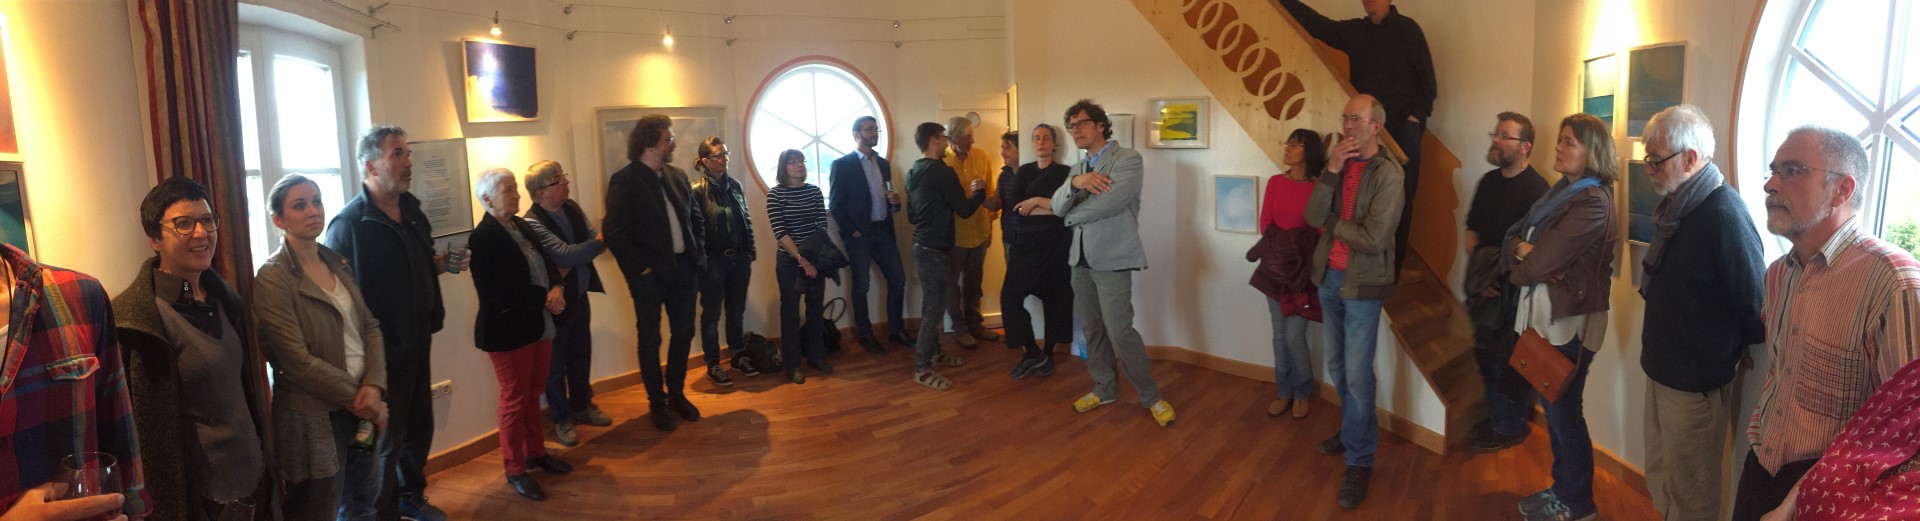 Ausstellungseröffnung von Michael Jank im Turm